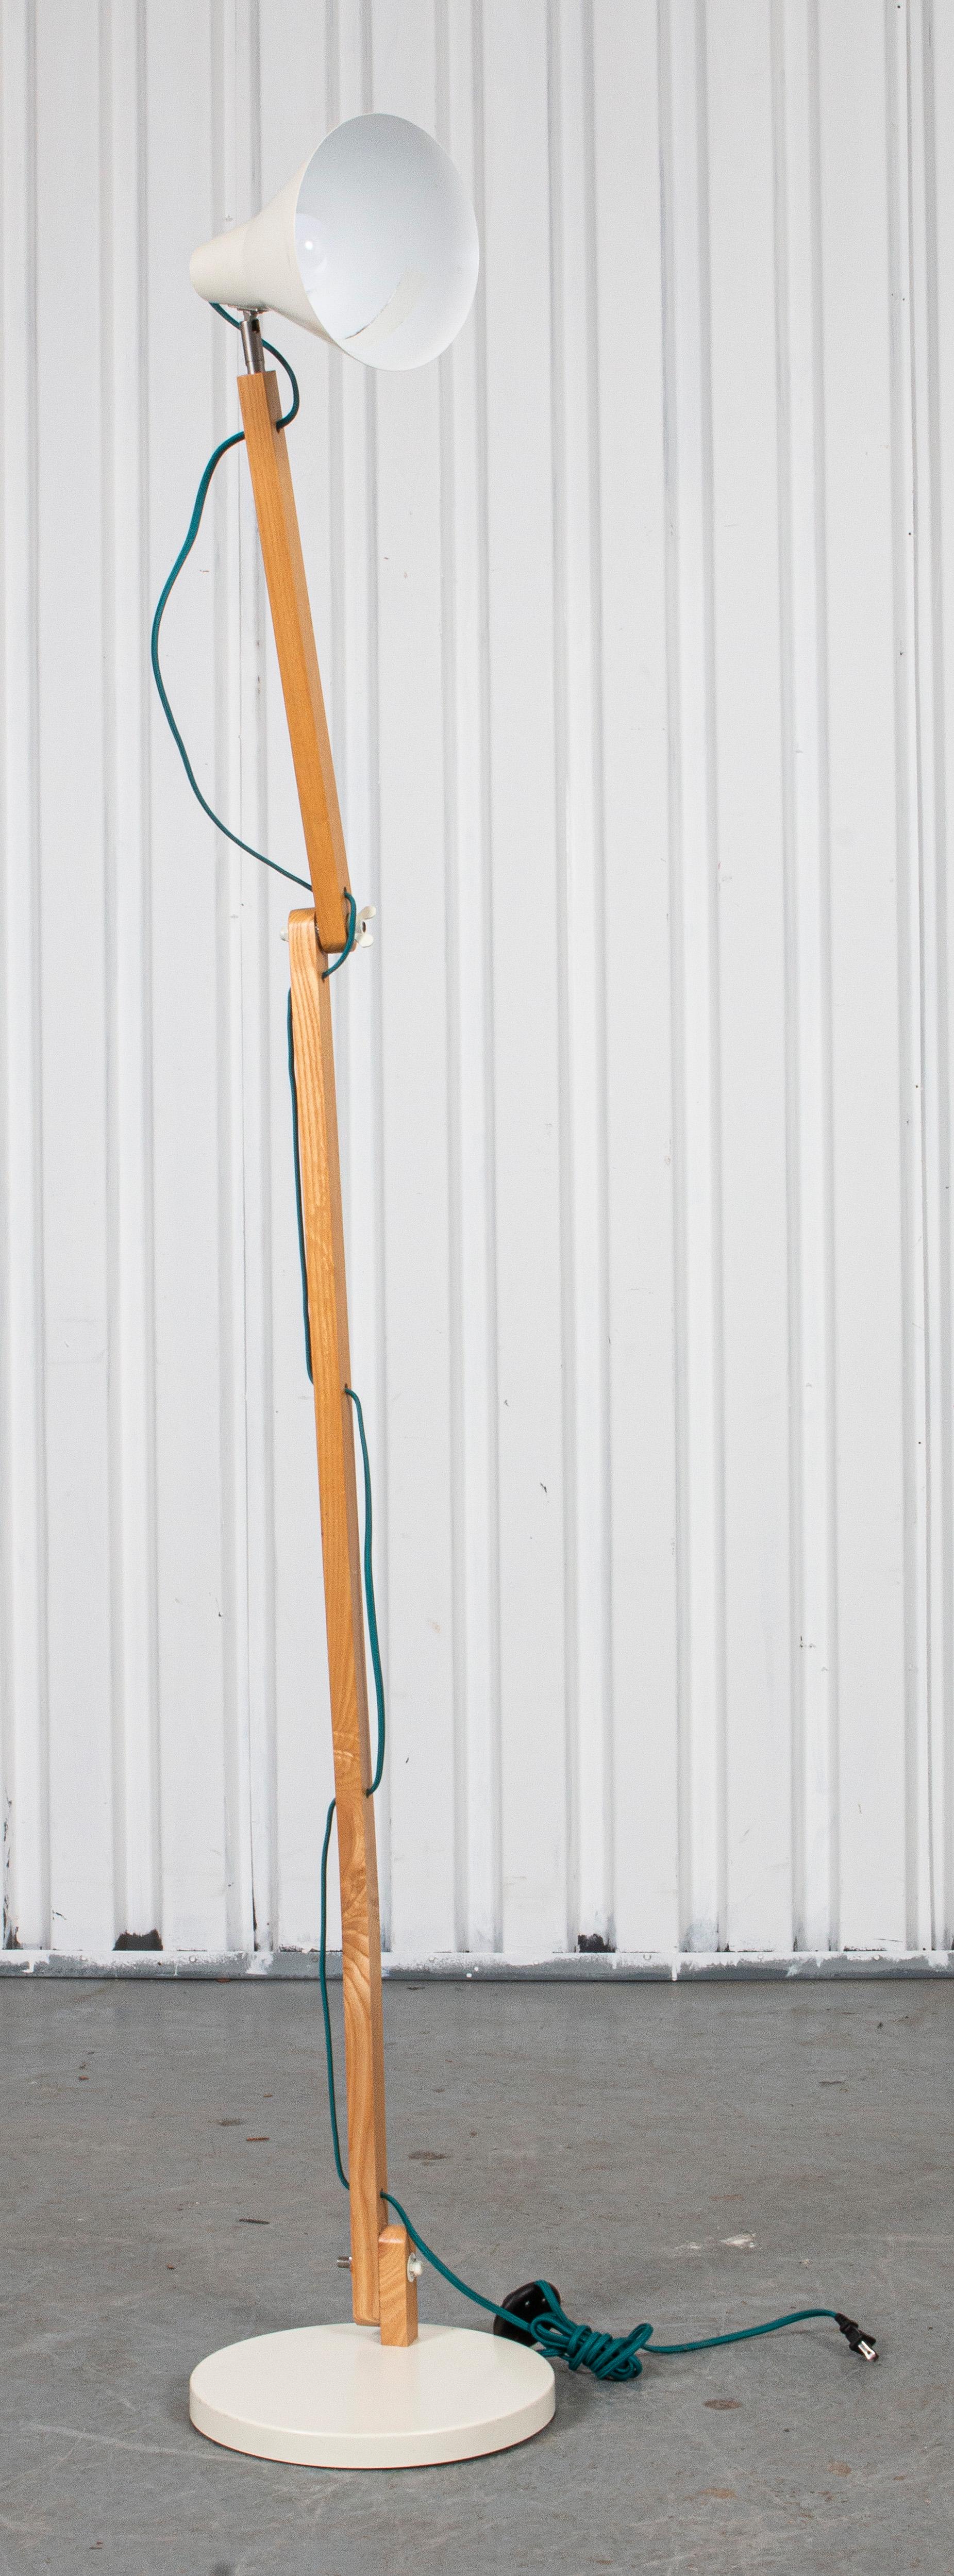 Modern blonde wood and enameled metal floor lamp. 
Measures: 72” height x 18” diameter.